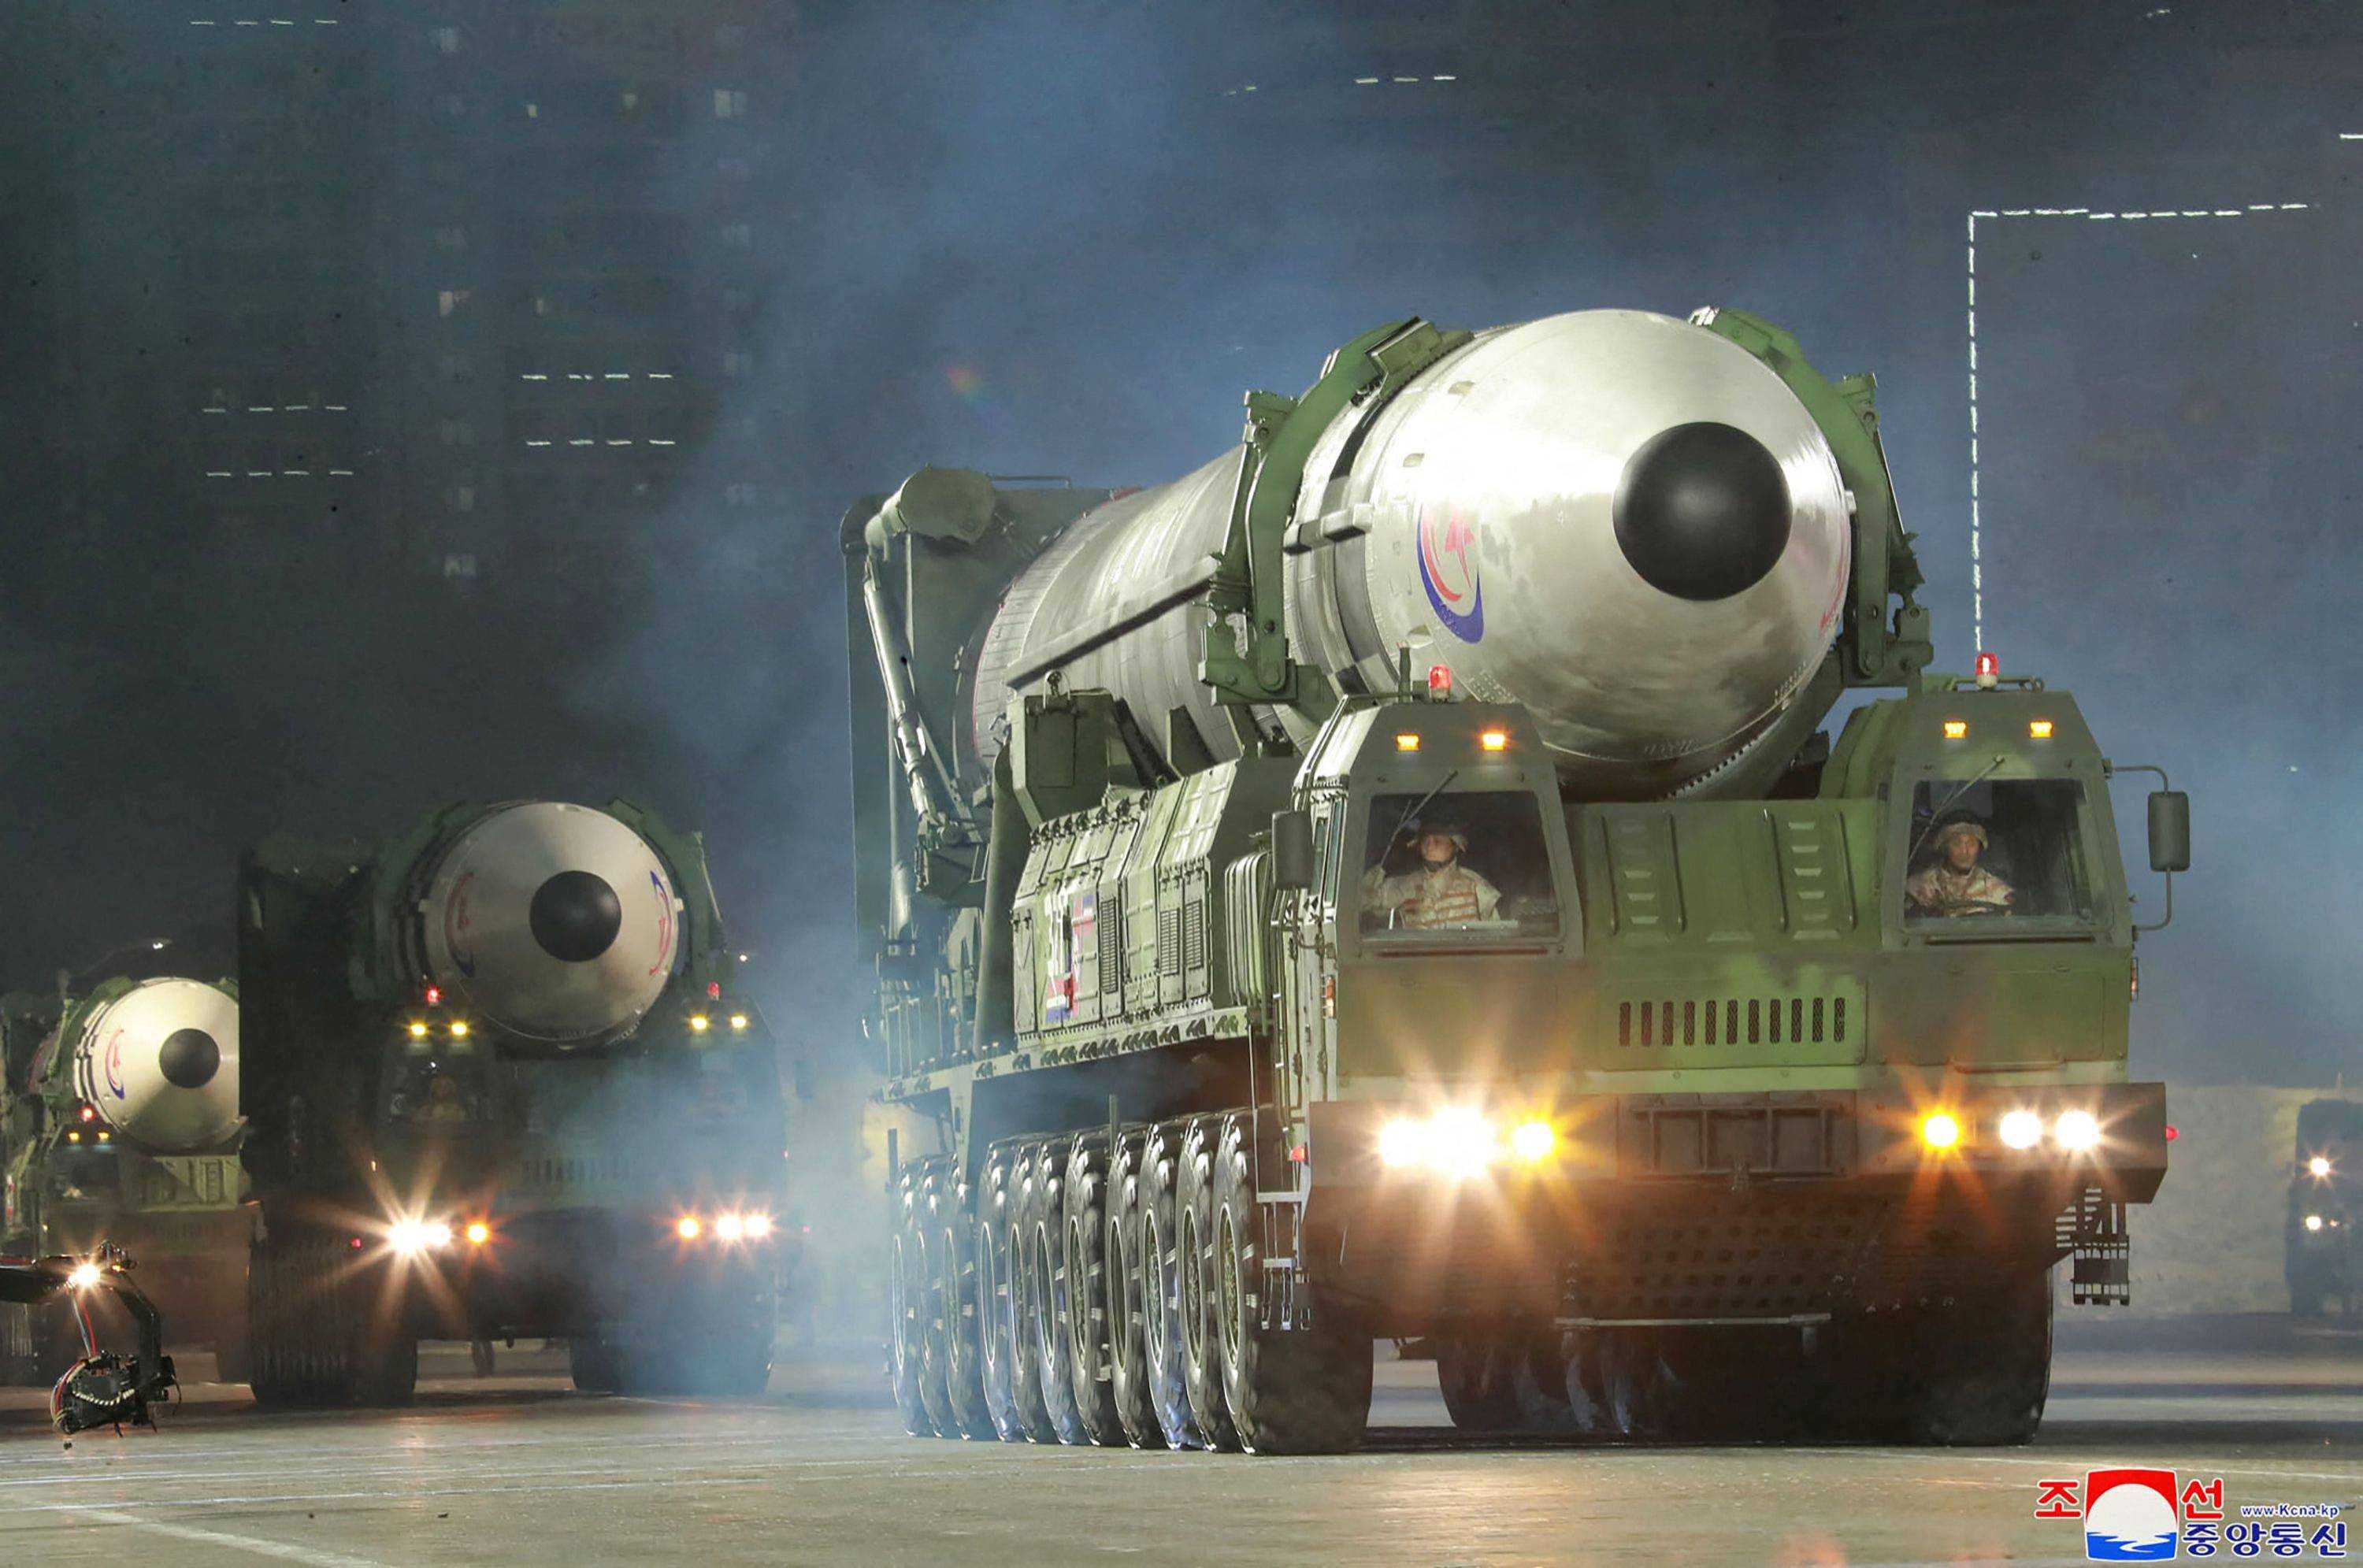 Menakutkan! Persaingan Senjata Dua Korea Meningkatkan Ketegangan di Asia Timur Laut, Apa Jadinya?